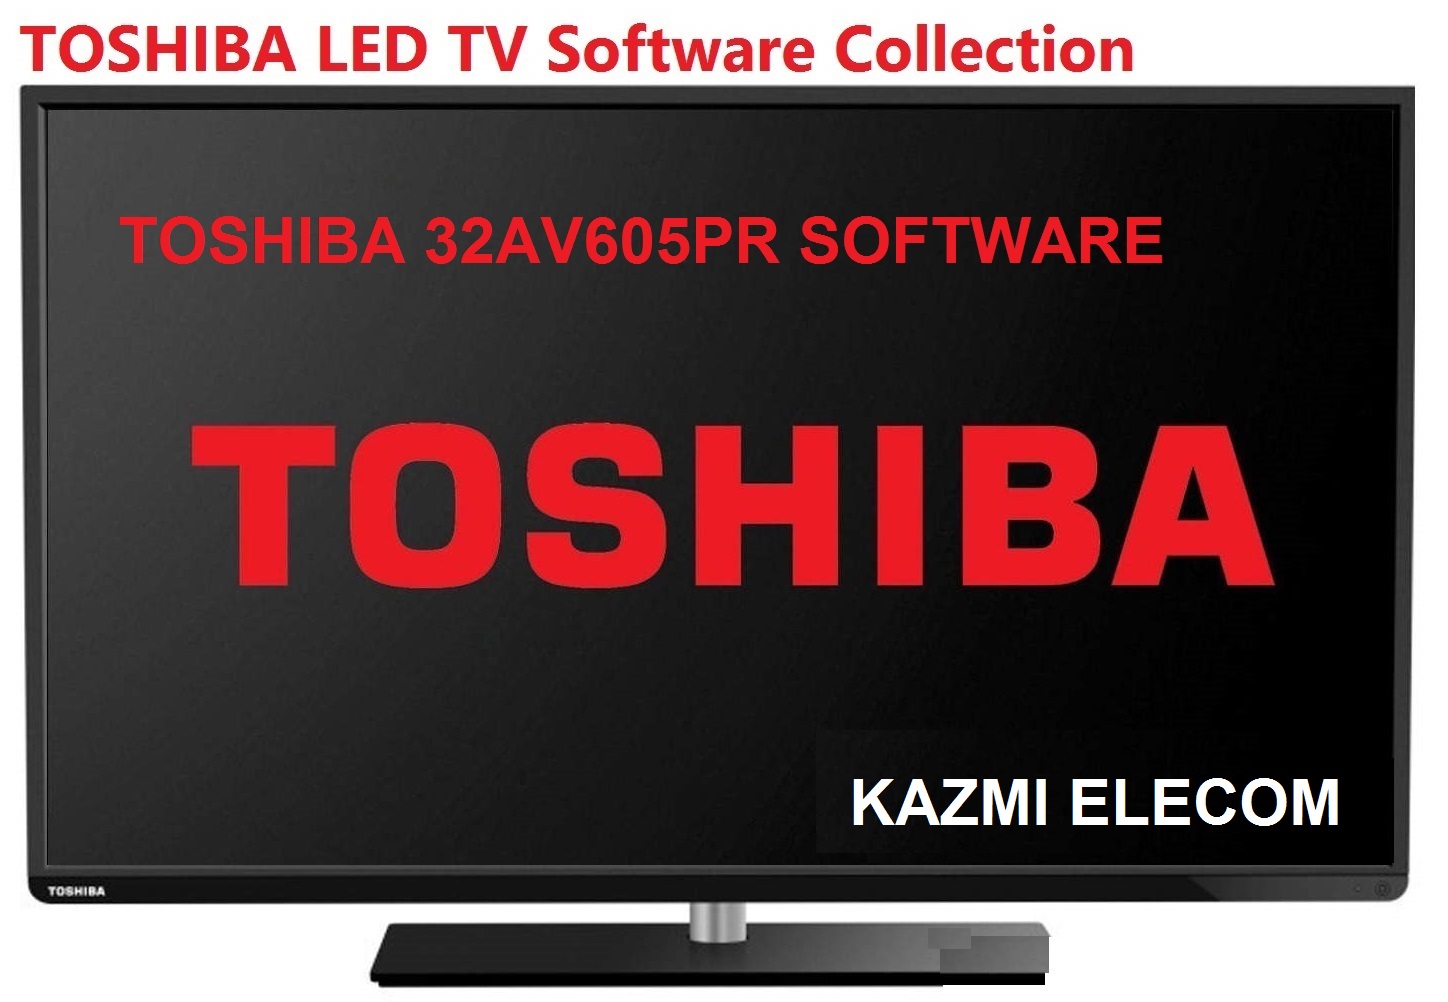 Toshiba 32Av605Pr